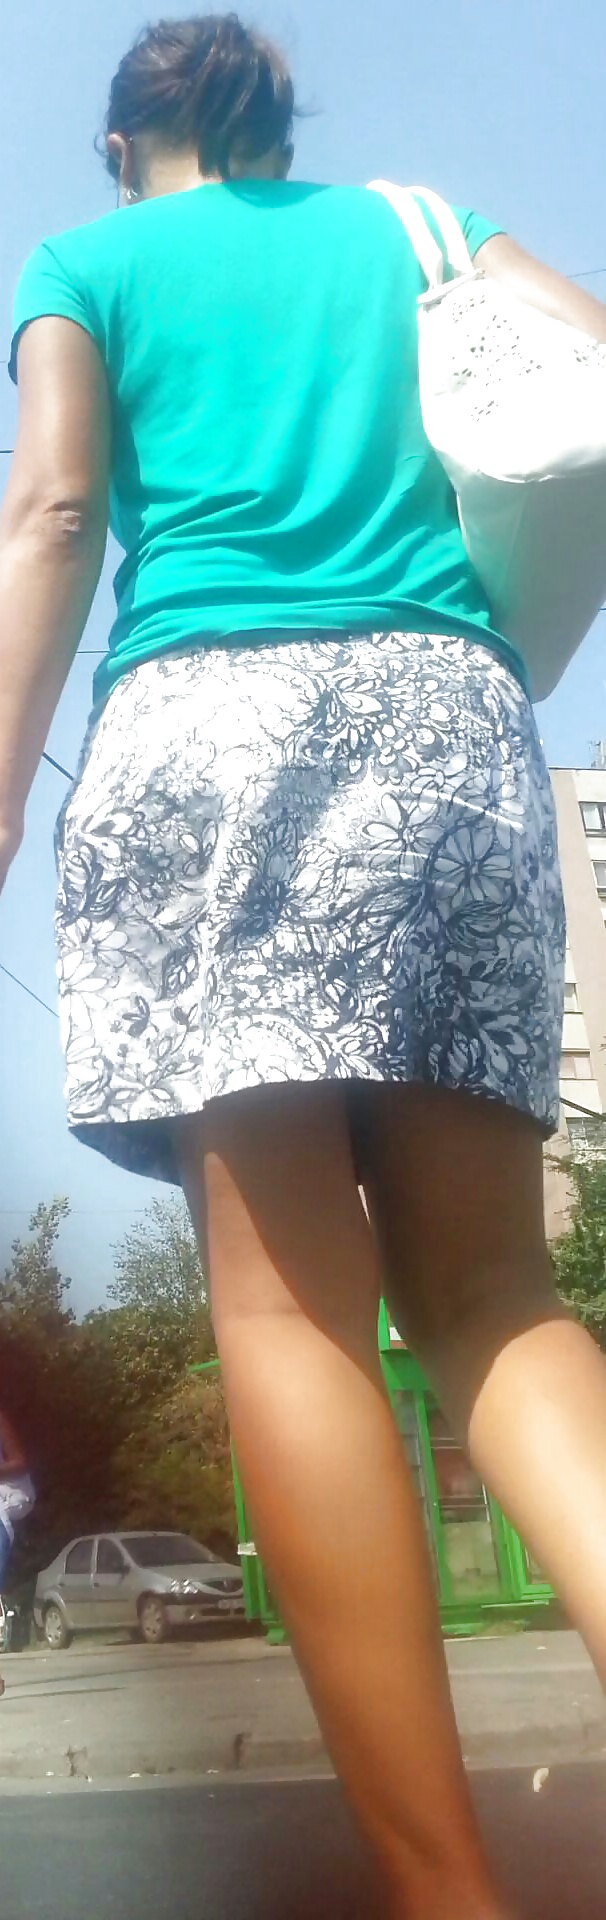 Espía viejo + joven falda sexy rumano
 #28213008